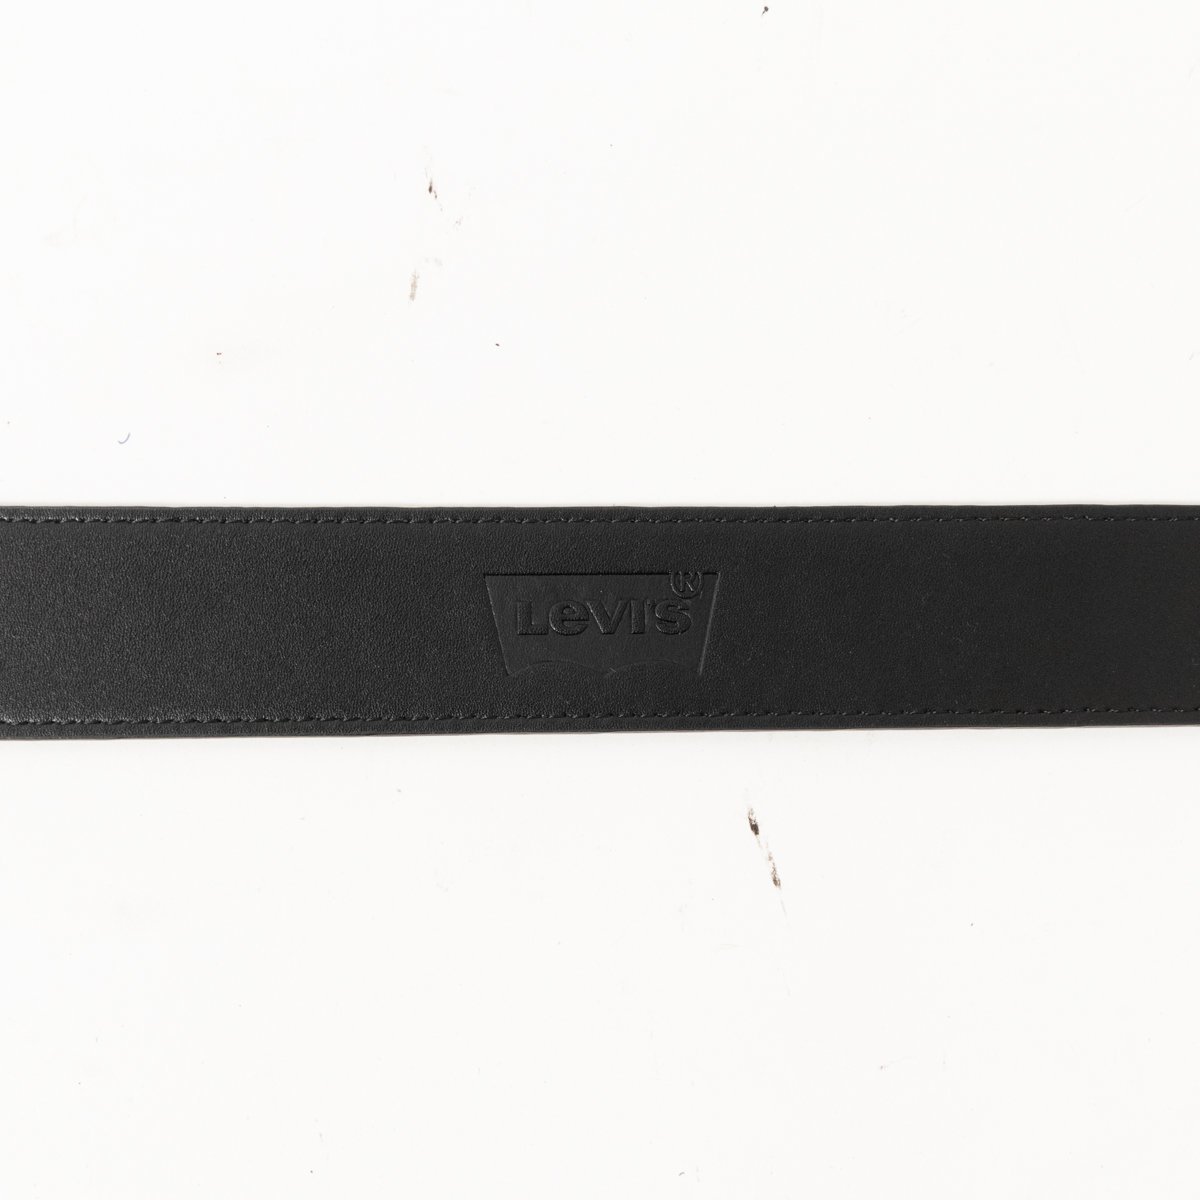 Levi's リーバイス ベルト 5穴 レザー調 ブラック 黒系 シルバー金具 ロゴ刻印 カジュアル アメカジ シンプル メンズ 紳士 男性 服飾小物の画像8